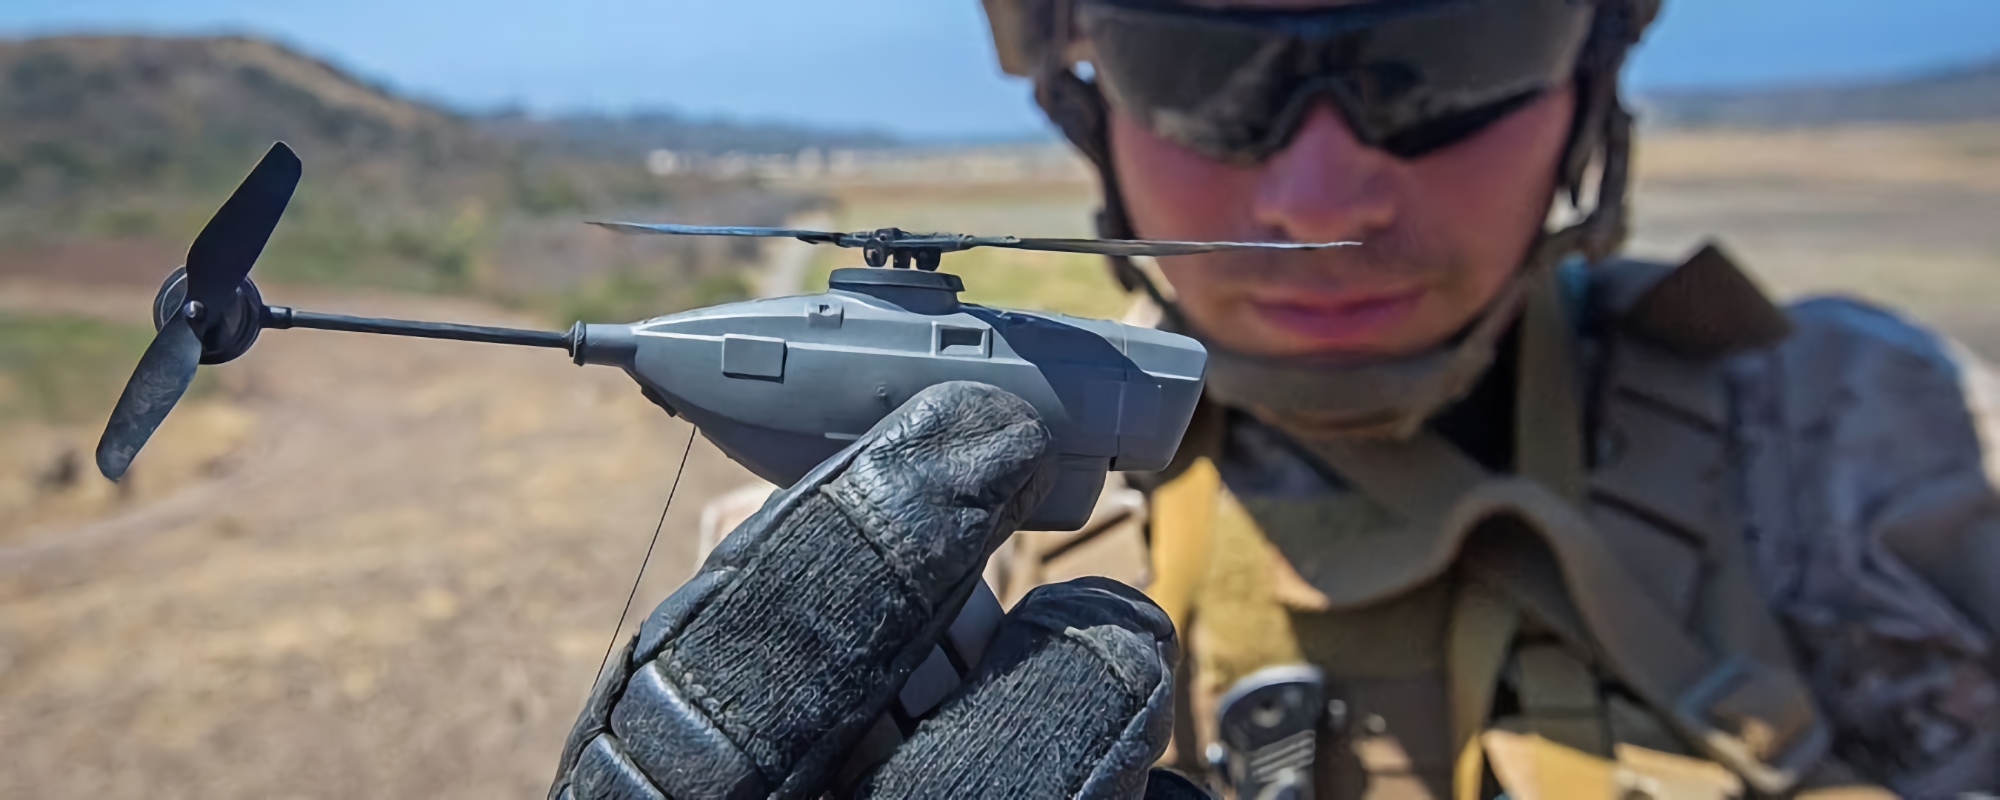 AFU korzysta już z mikro dronów Black Hornet Nano, które mieszczą się w dłoni i są przeznaczone do prowadzenia wojny miejskiej